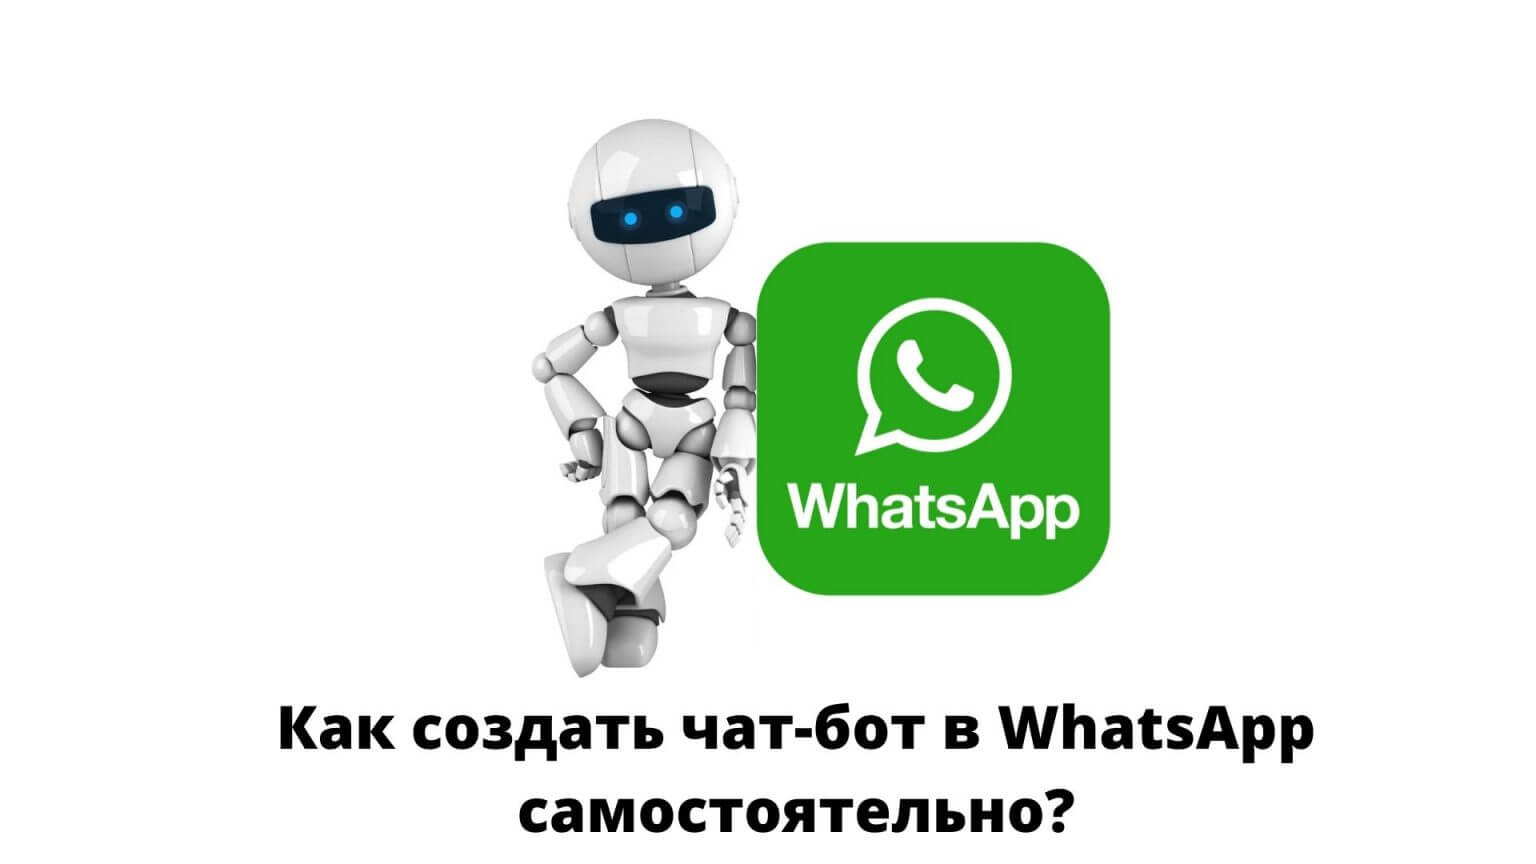 WhatsApp-бот совмещает в себе чат-бот и автоворонку